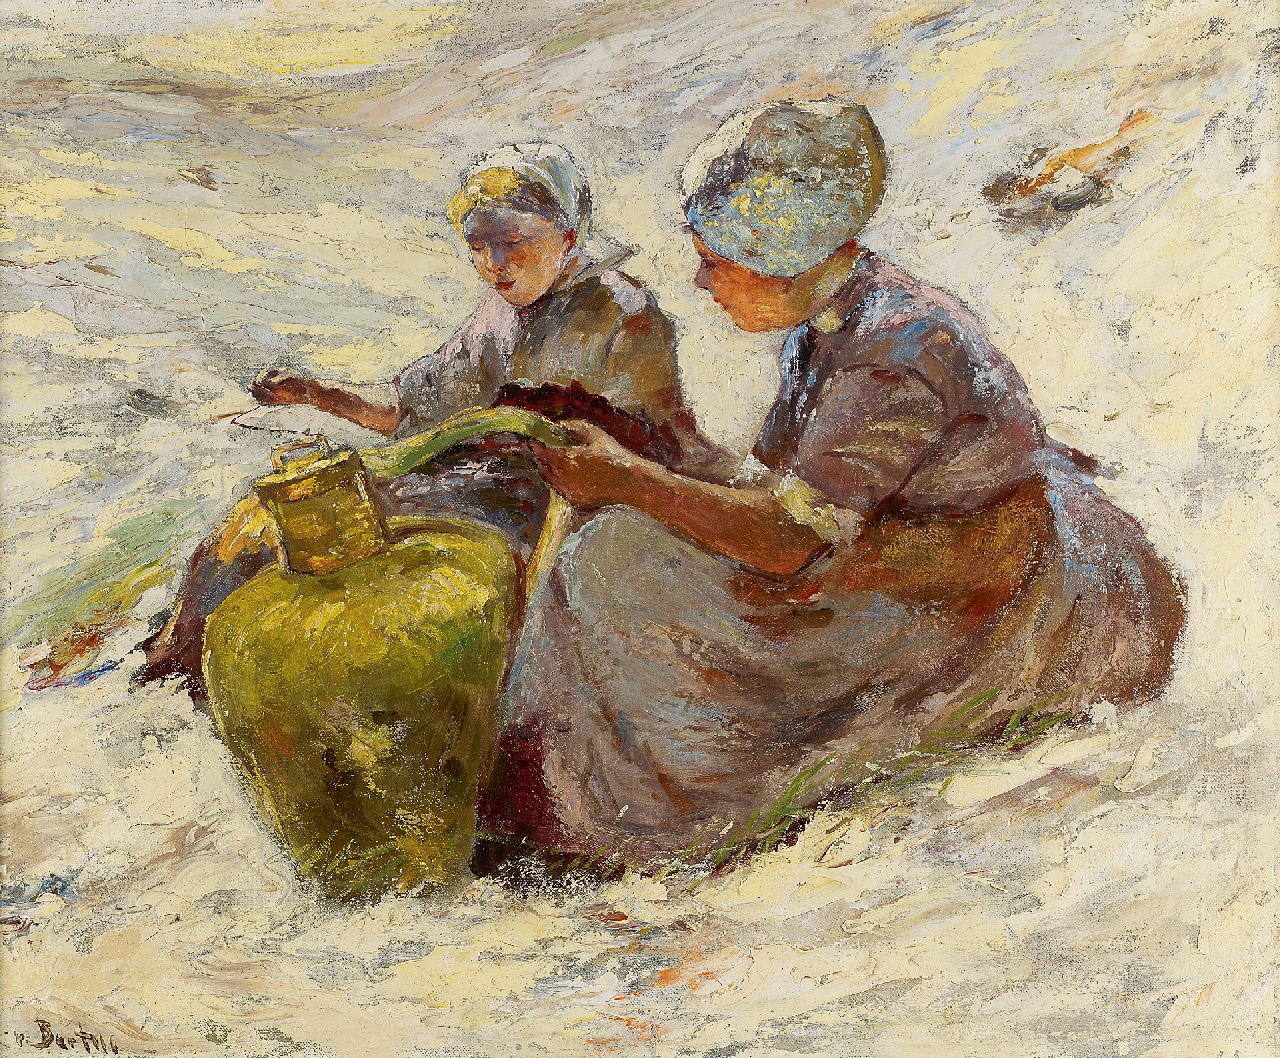 Bartels H. von | Hans von Bartels, Two fisherman's wives in the dunes, Öl auf Leinwand 50,2 x 59,9 cm, signed l.l.